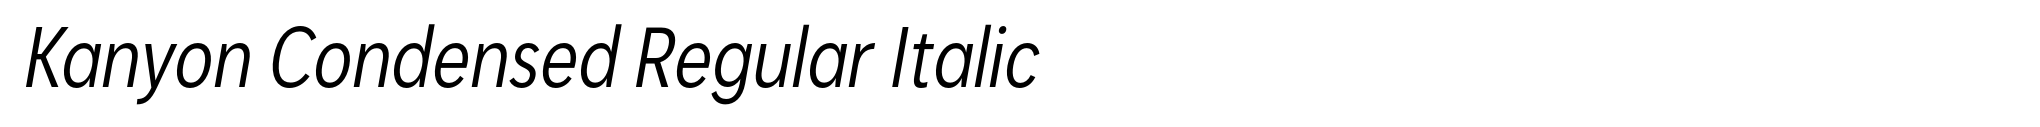 Kanyon Condensed Regular Italic image